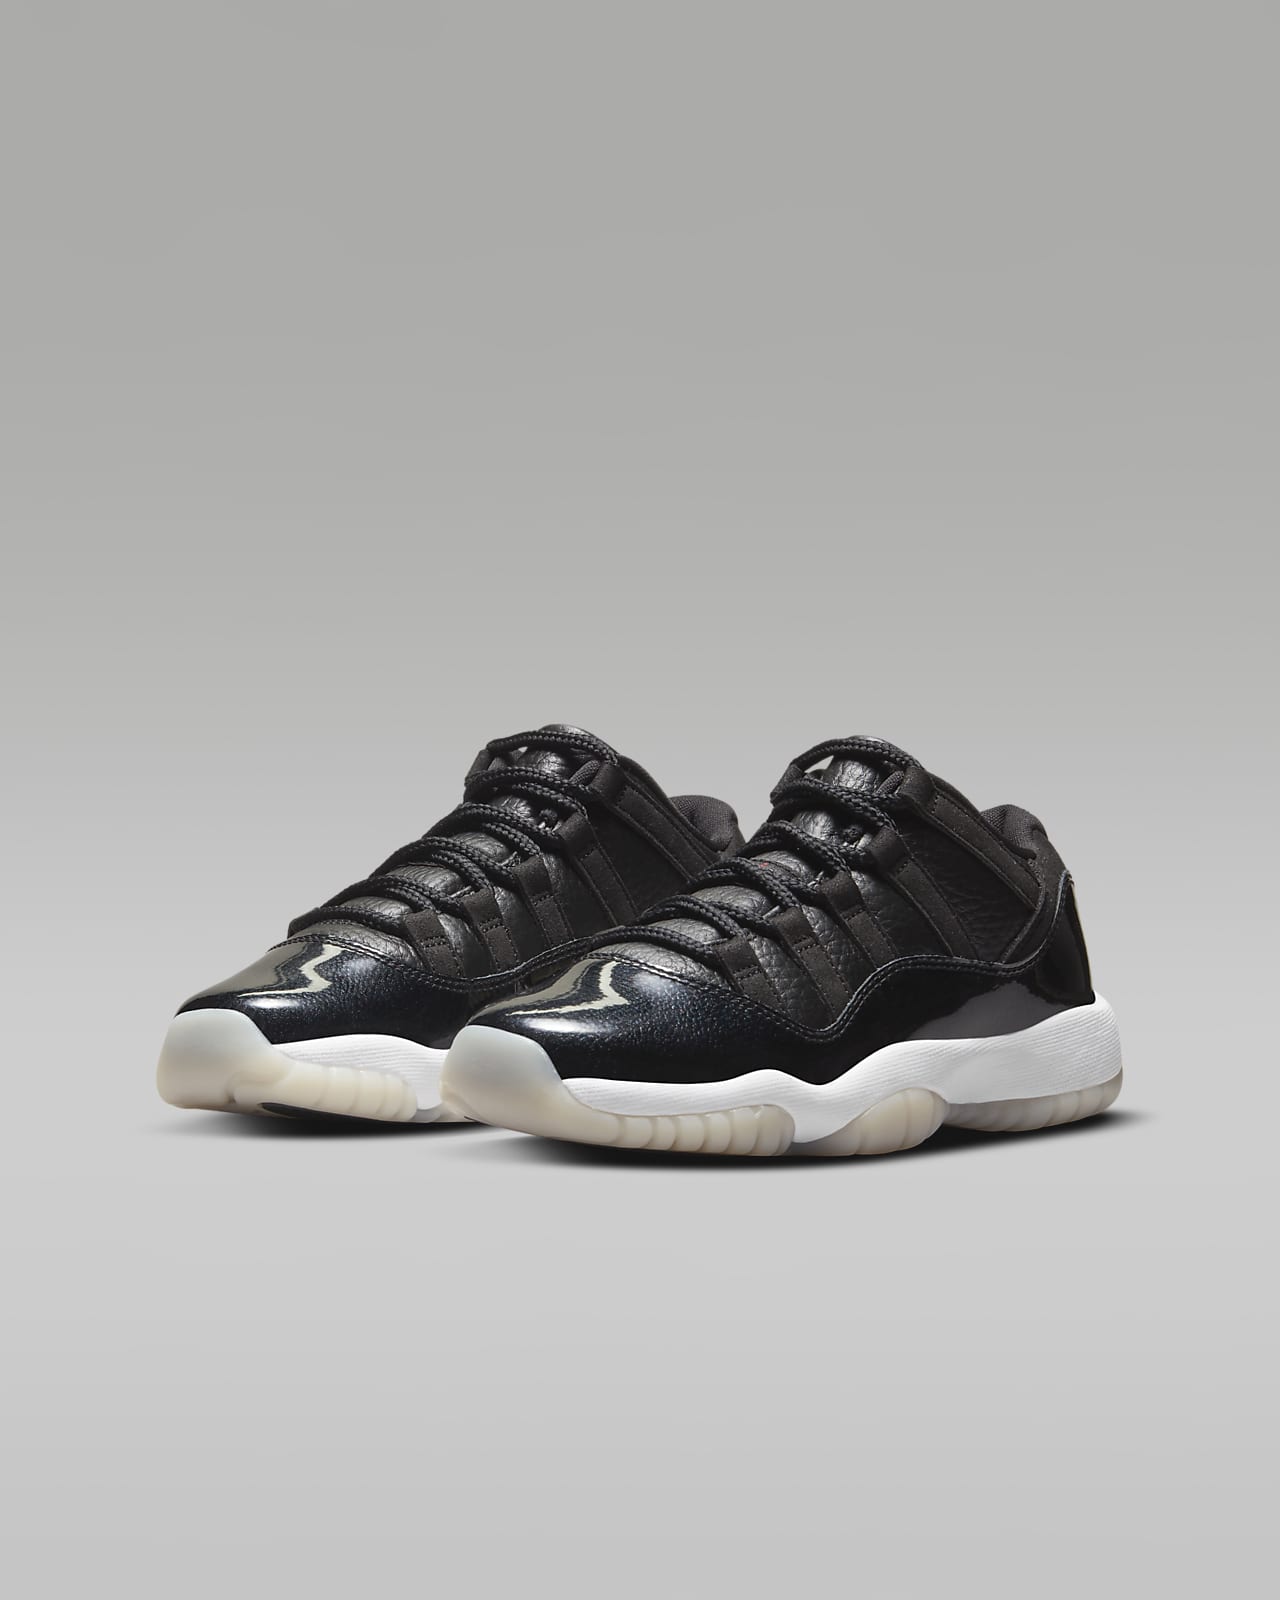 Air Jordan 11 Retro Low Older Kids' Shoes. Nike LU